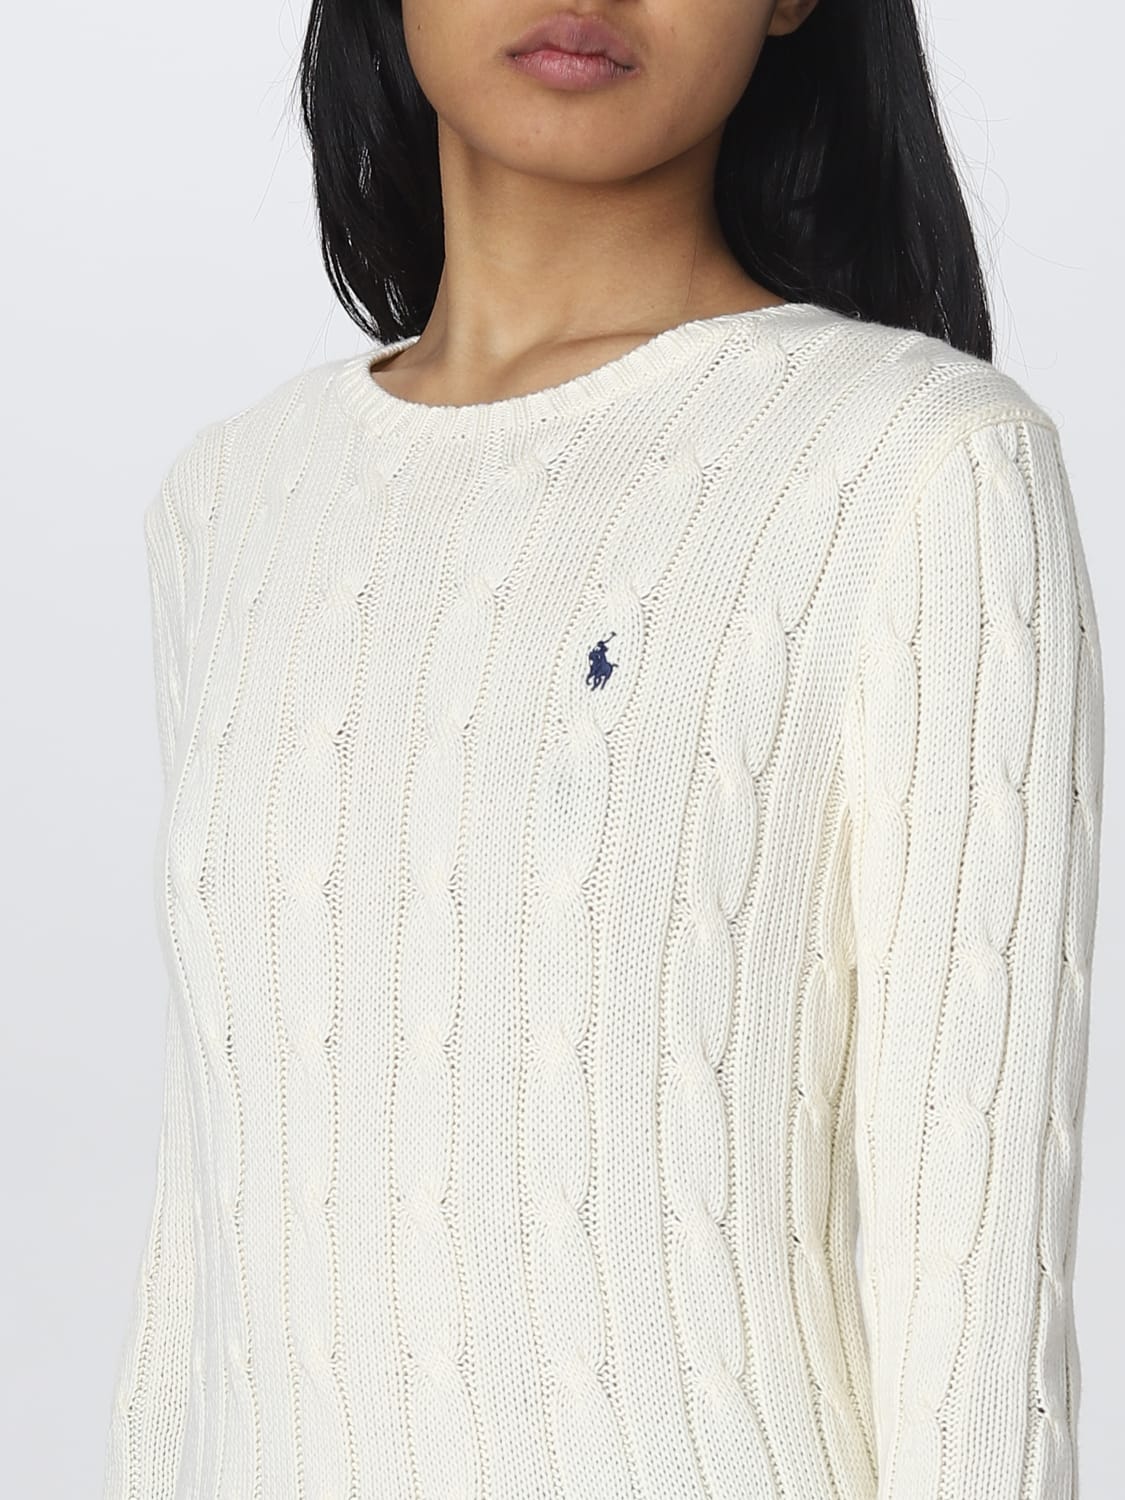 financieel Sta in plaats daarvan op kop POLO RALPH LAUREN: sweater for woman - Cream | Polo Ralph Lauren sweater  211891640 online on GIGLIO.COM